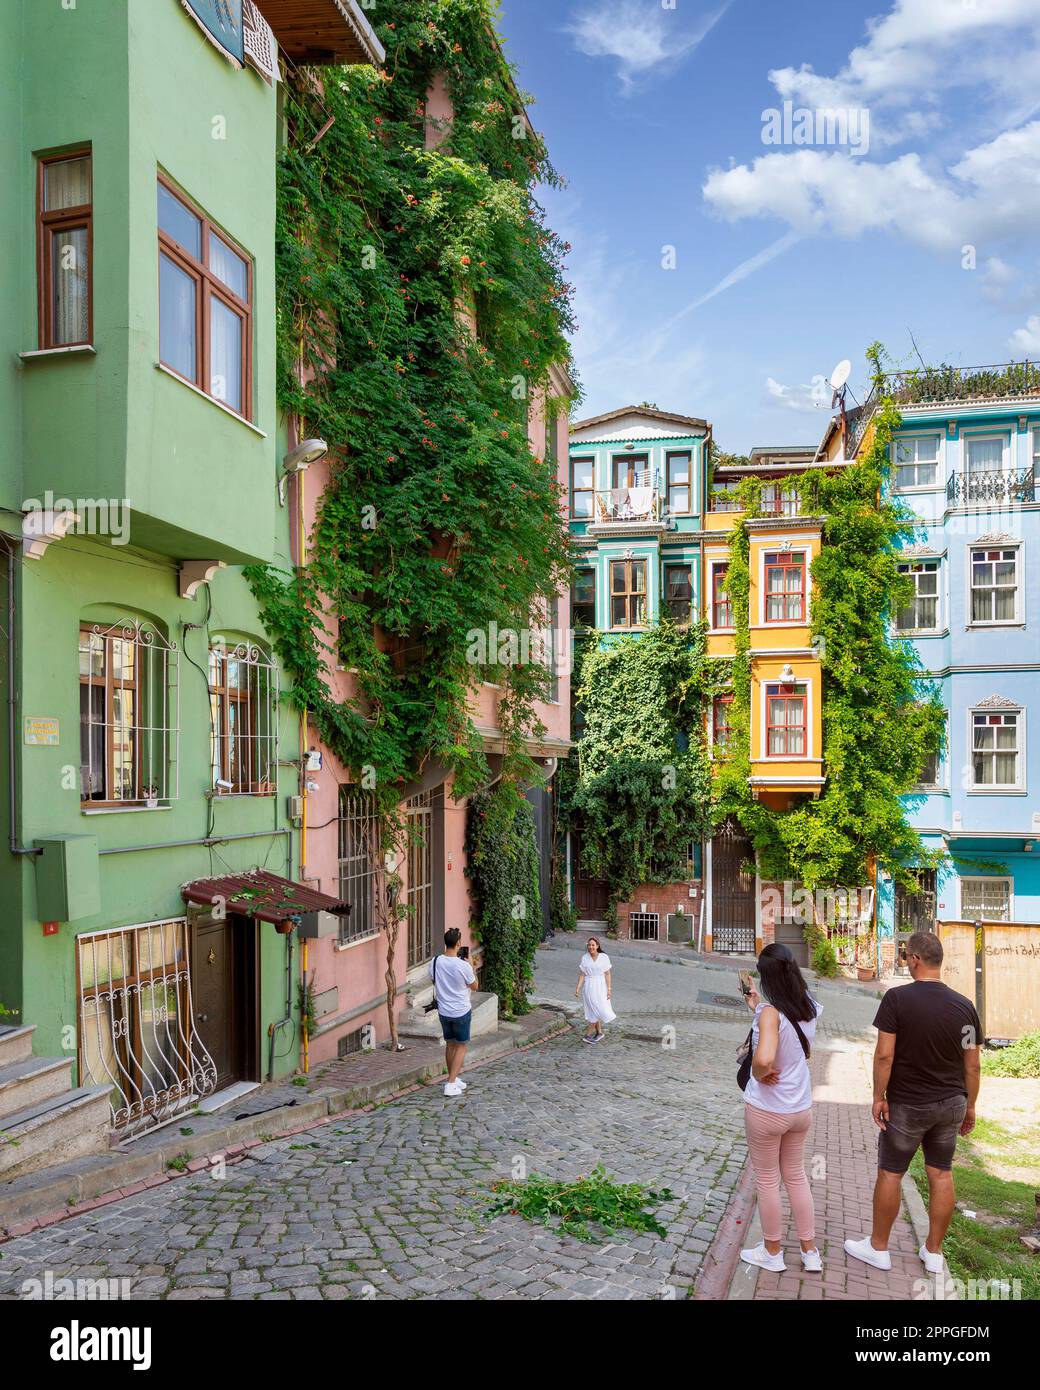 Casas antiguas tradicionales coloridas en el distrito de Balat, con turistas tomando fotos conmemorativas en un verano, Estambul, Turquía Foto de stock